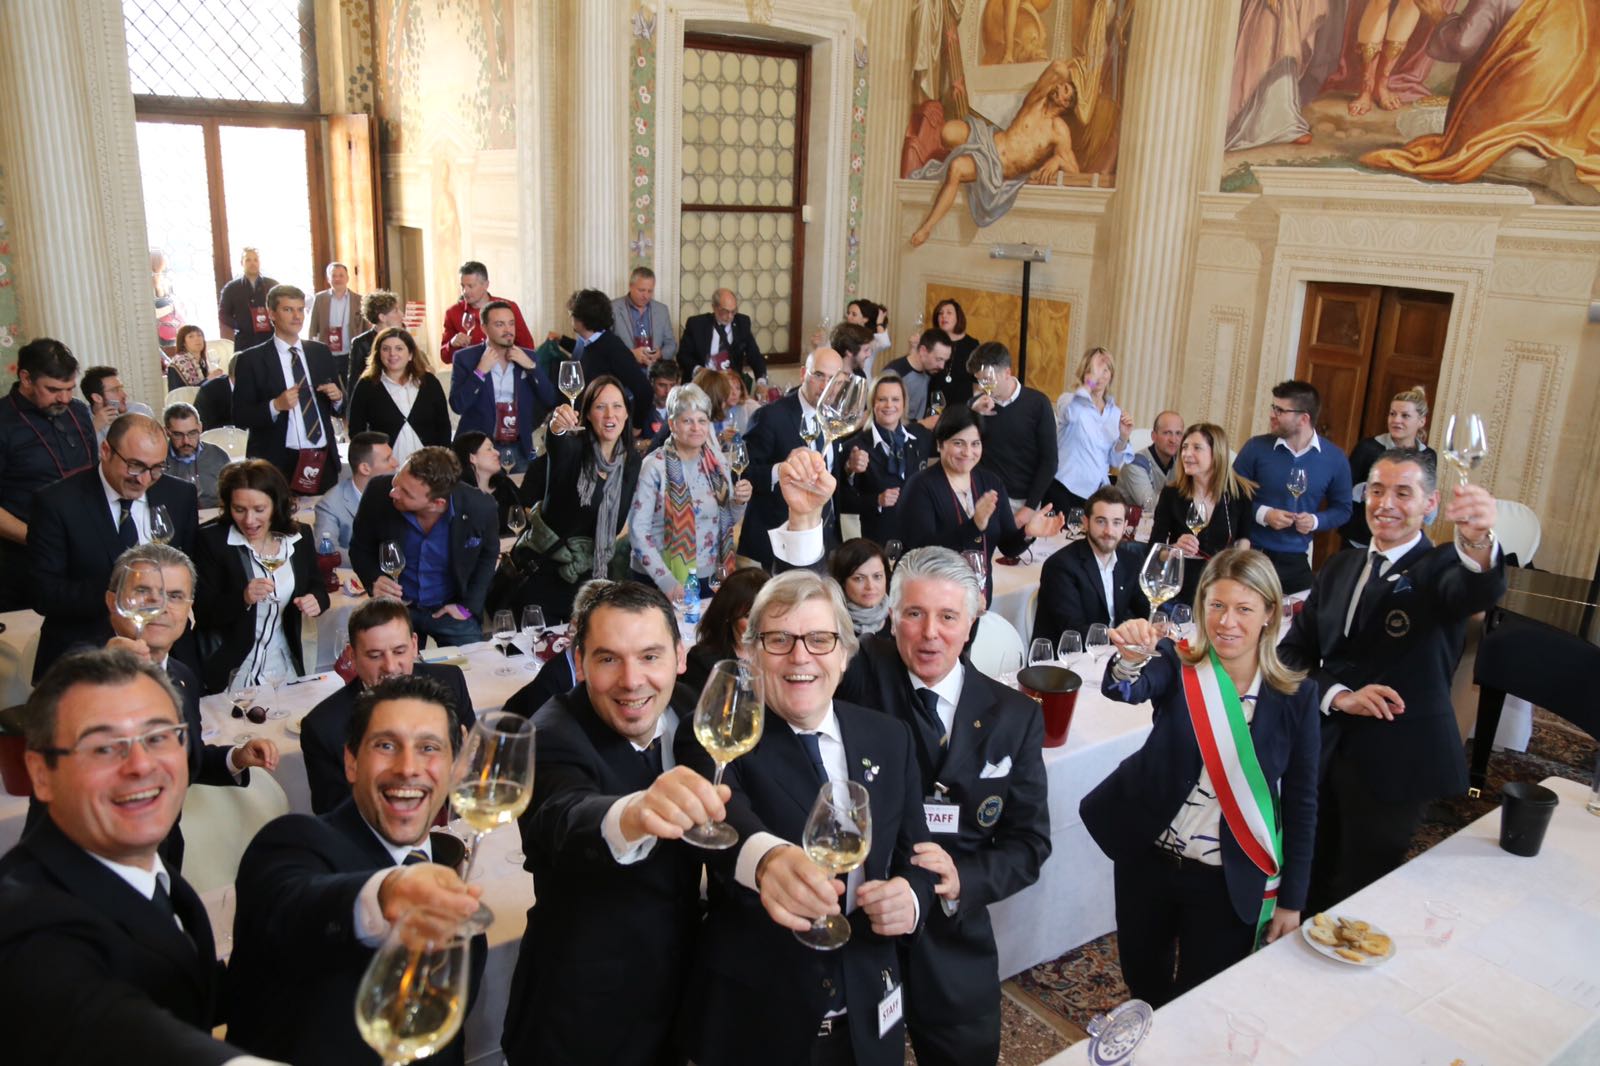 Ais Veneto: fra vino e note la passione è senza confini